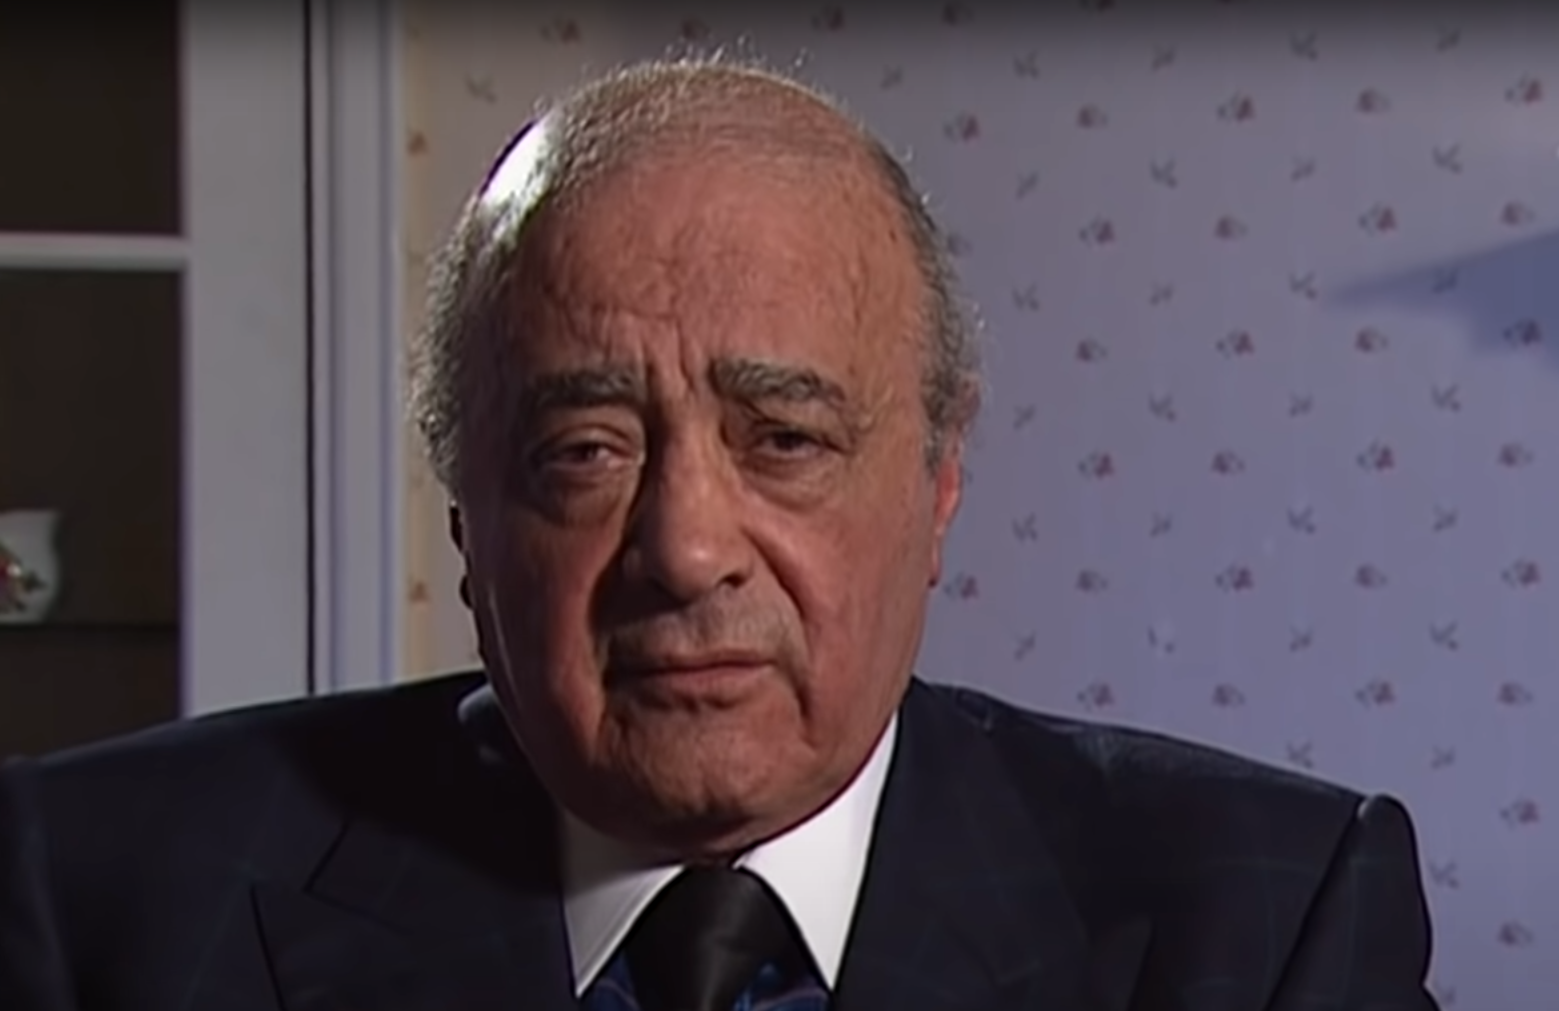 Décès de Mohamed Al-Fayed, ancien propriétaire de Harrods et père de Dodi Al-Fayed